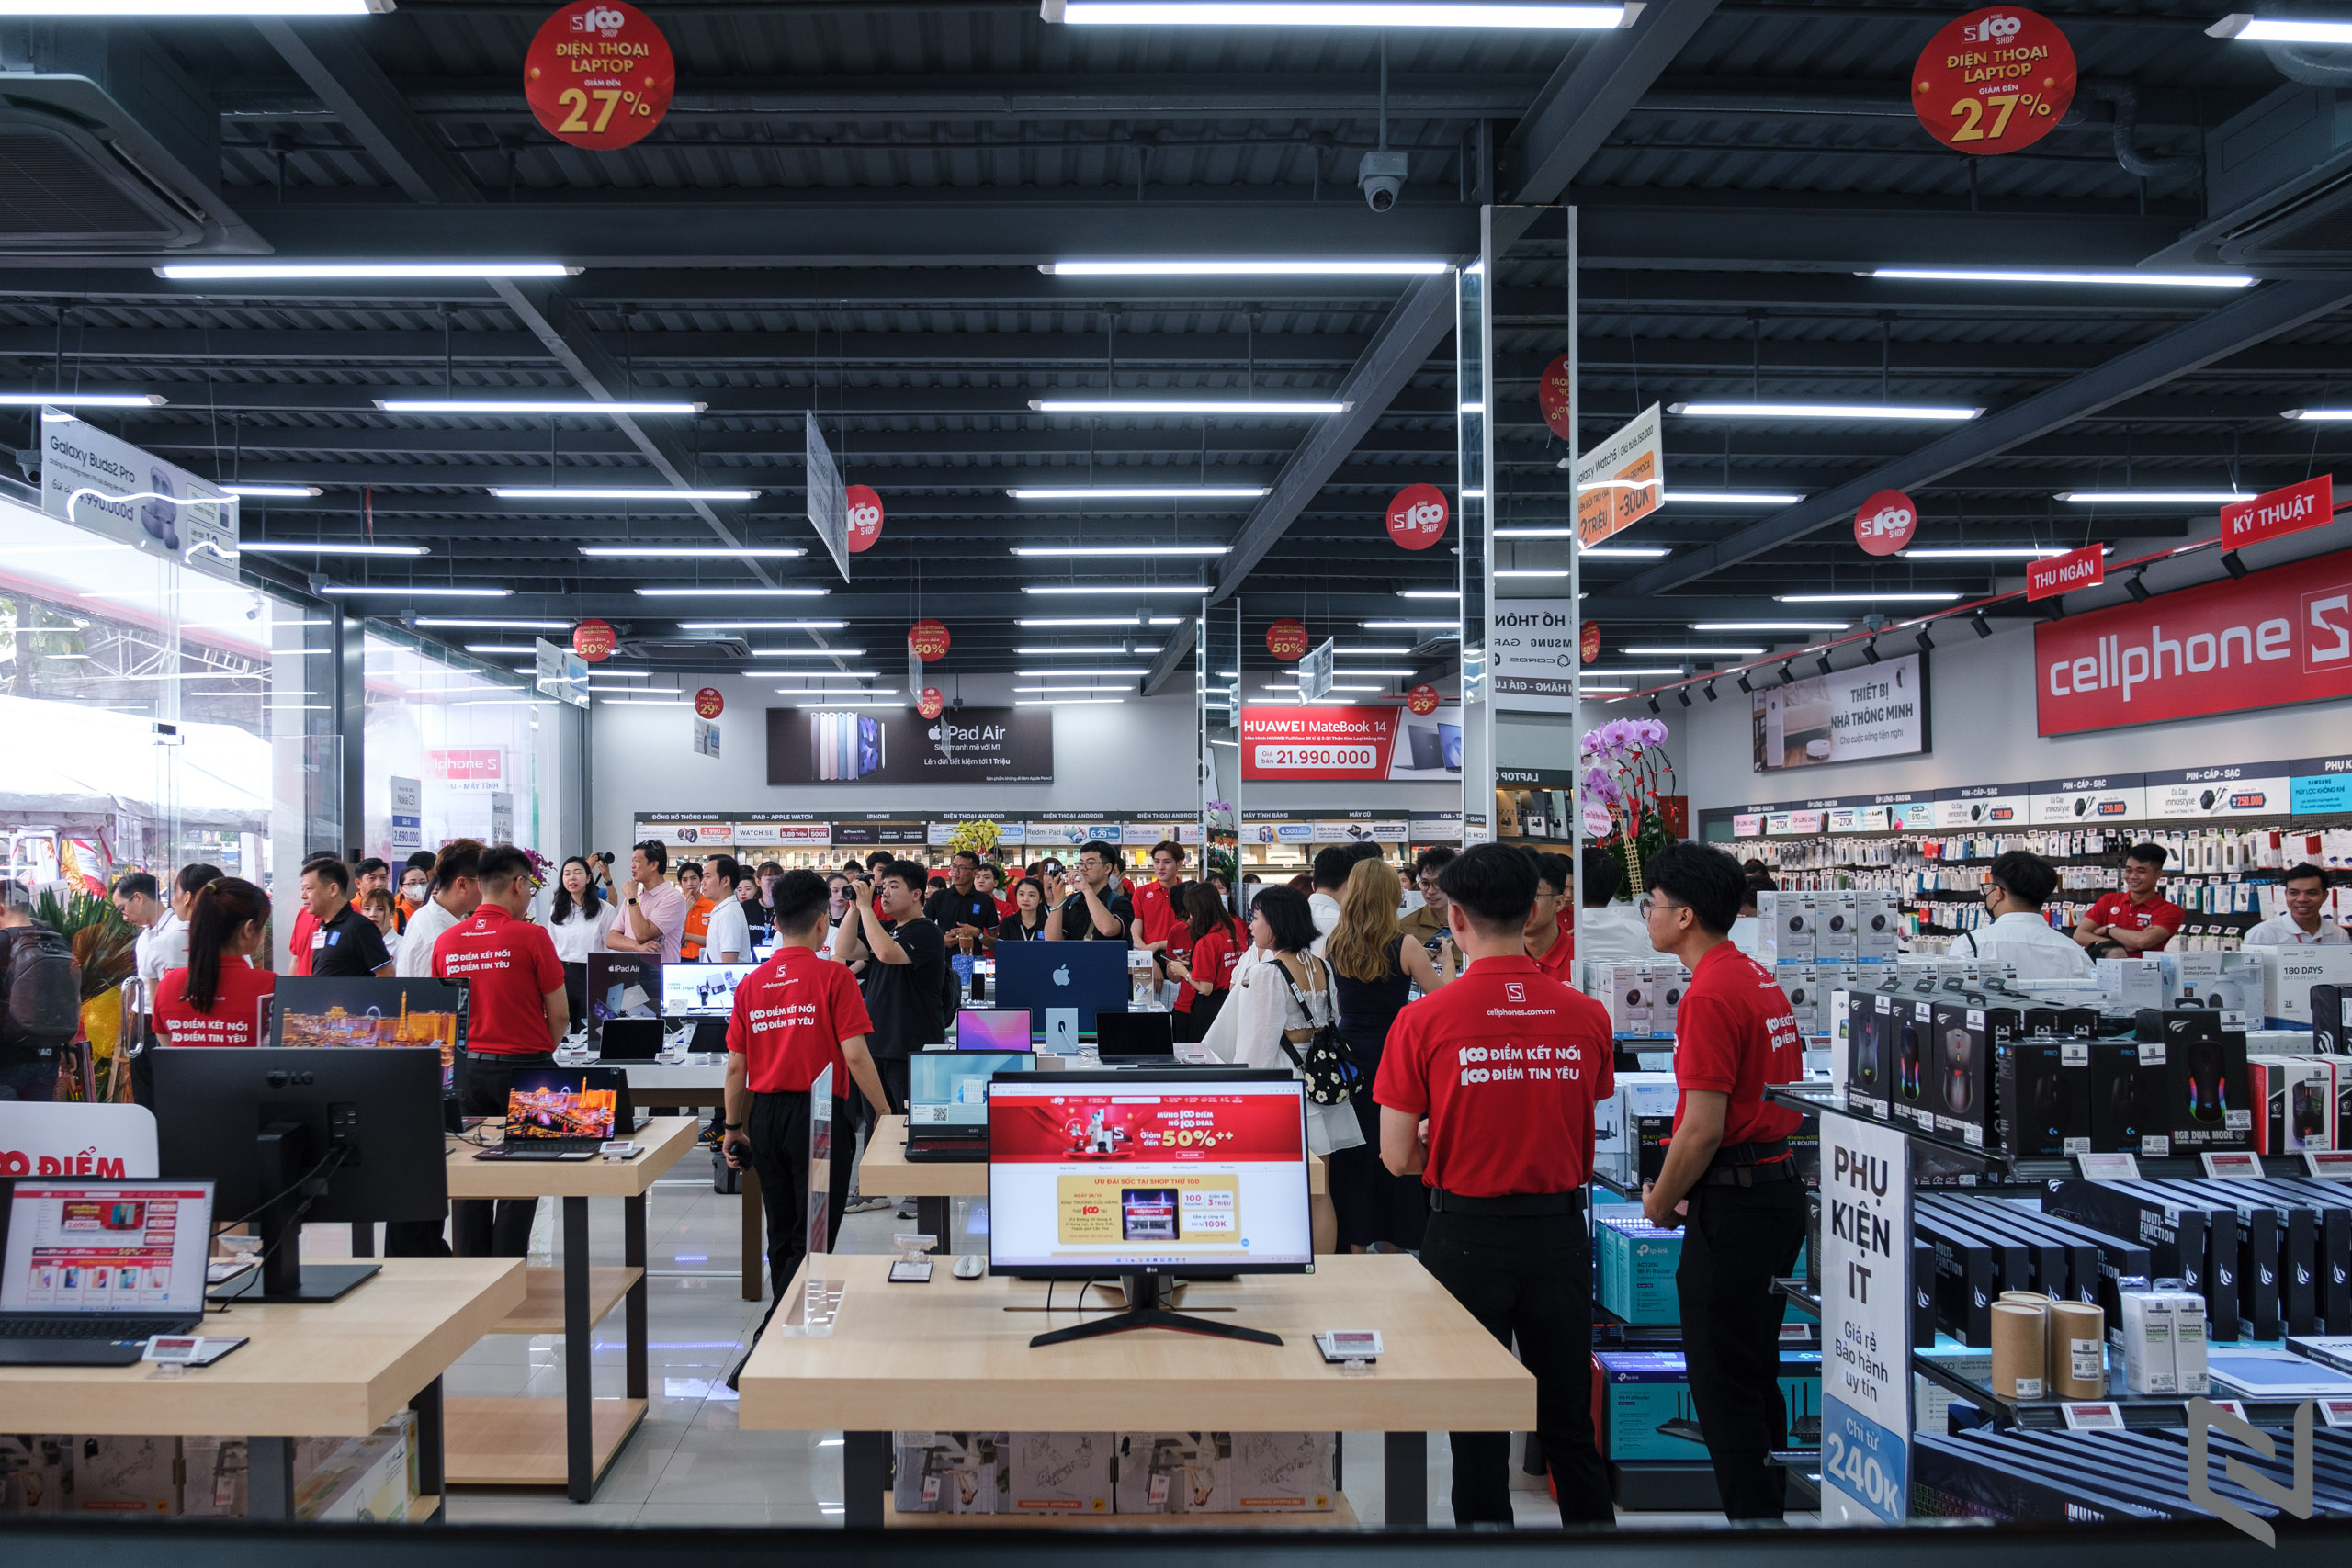 CellphoneS khai trương cửa hàng mới tại thành phố Cần Thơ, đạt cột mốc 100 cửa hàng toàn quốc